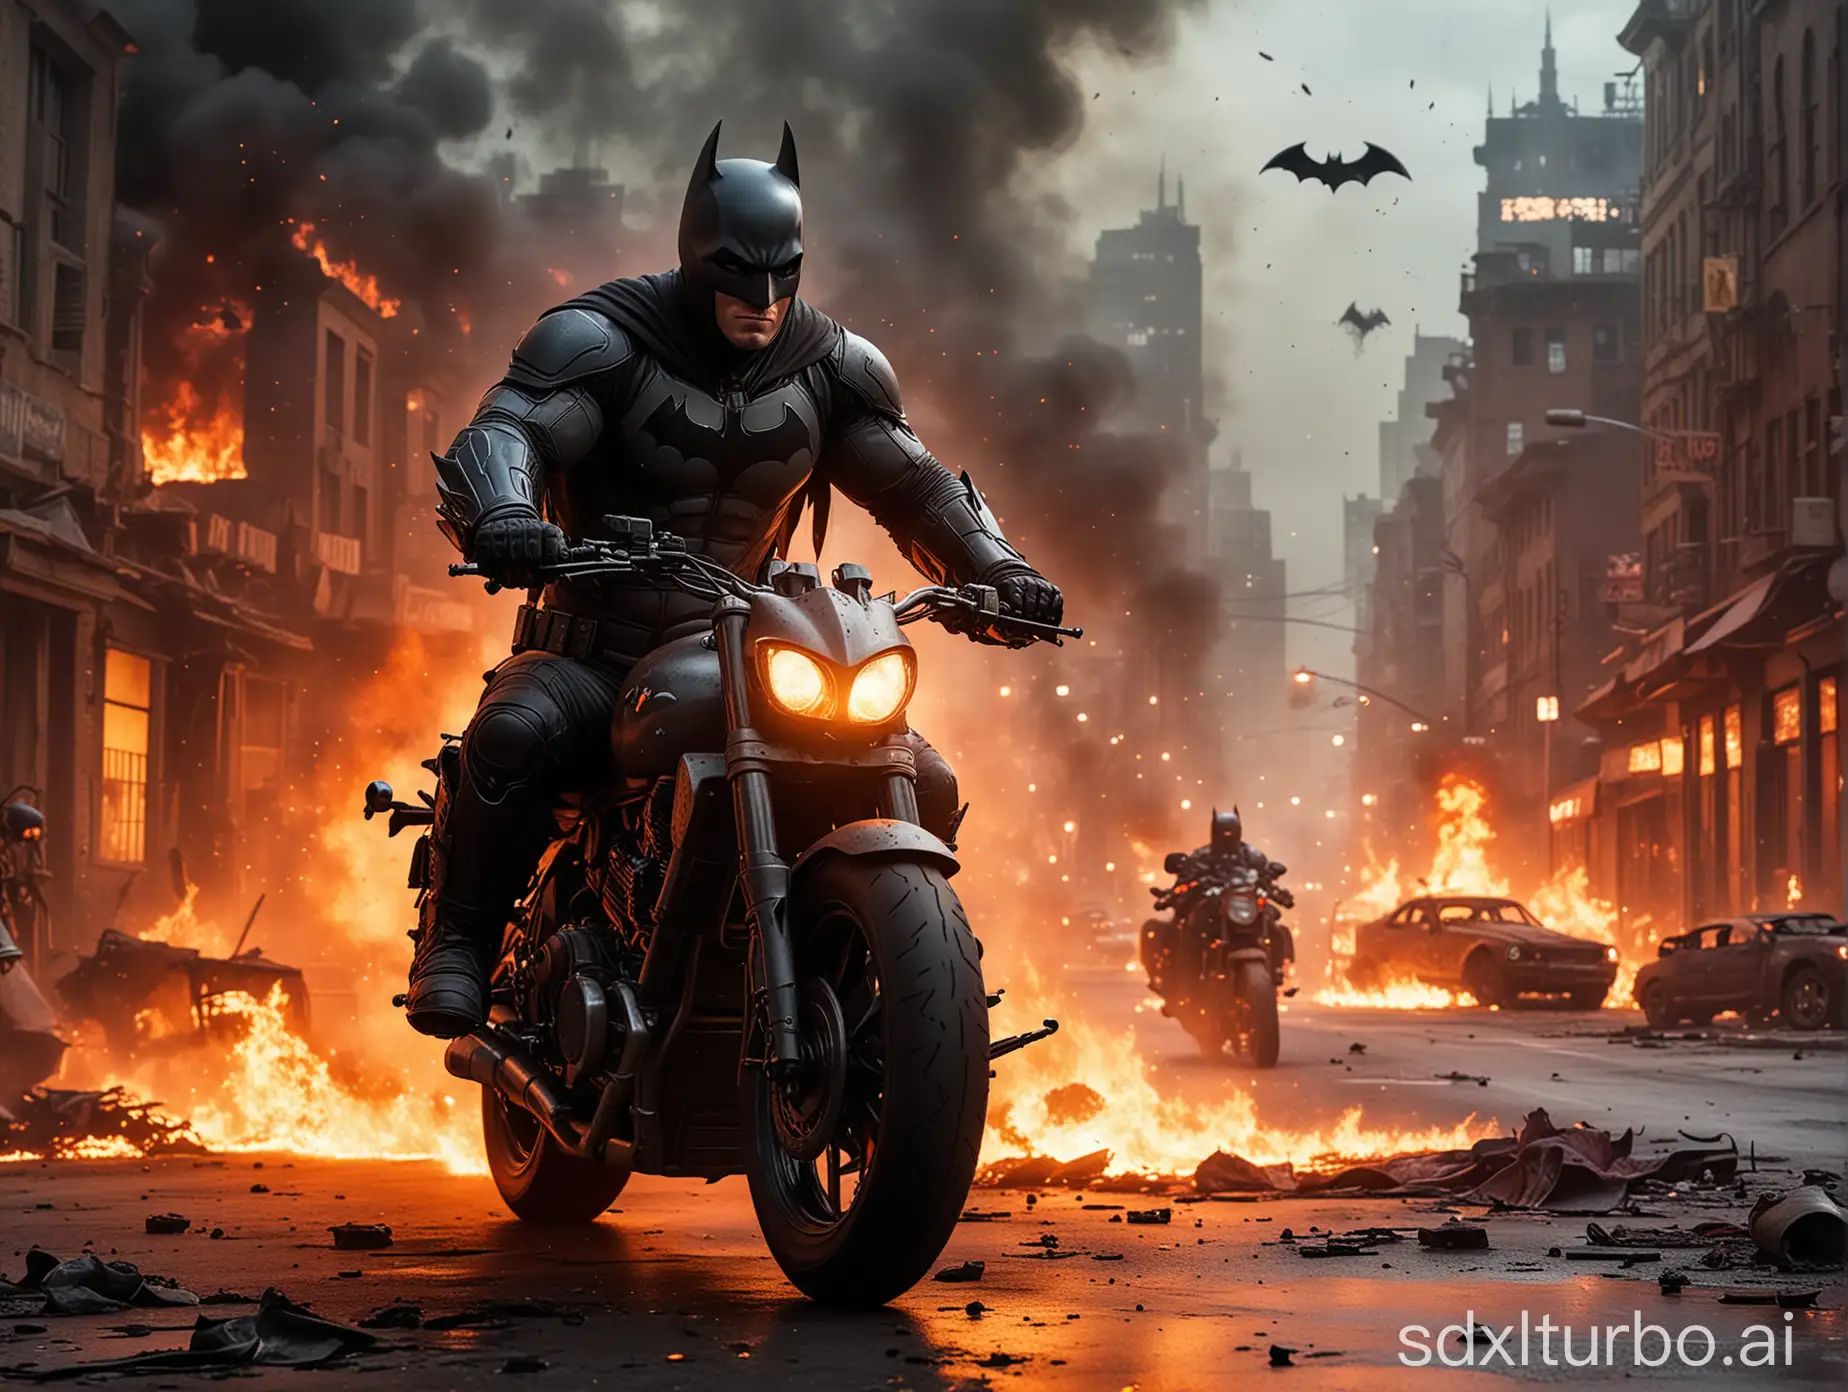 Motorräder gehen, auf dem Motorrad sitz  Batman, das Motorrad ist Rot und er fährt durch einer brennenden Stadt